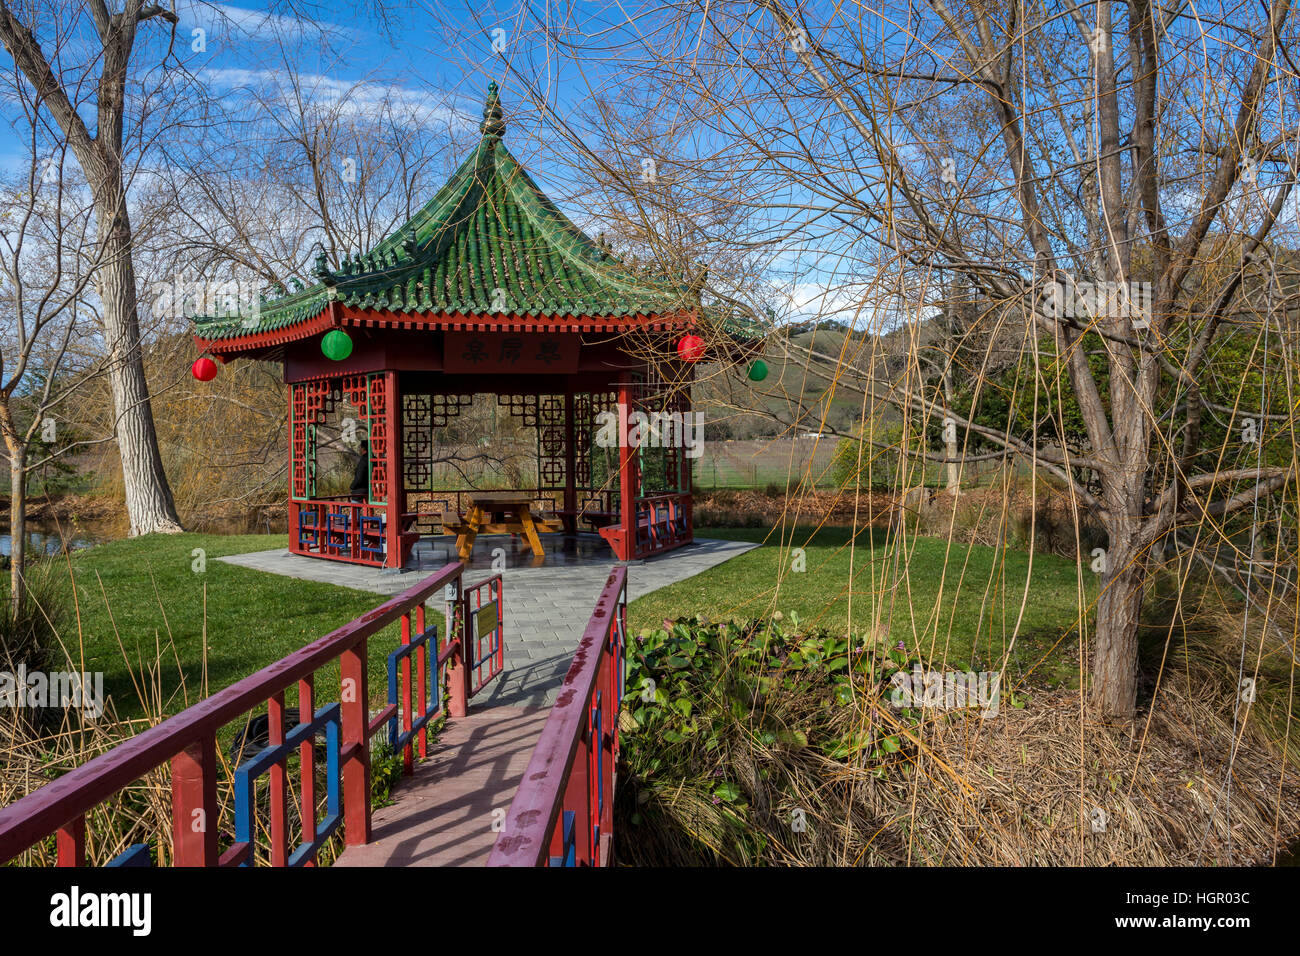 Jardin Chinois, les jardins chinois, entreprise vinicole Chateau Montelena, calistoga, Napa Valley, Comté de Napa, Californie Banque D'Images